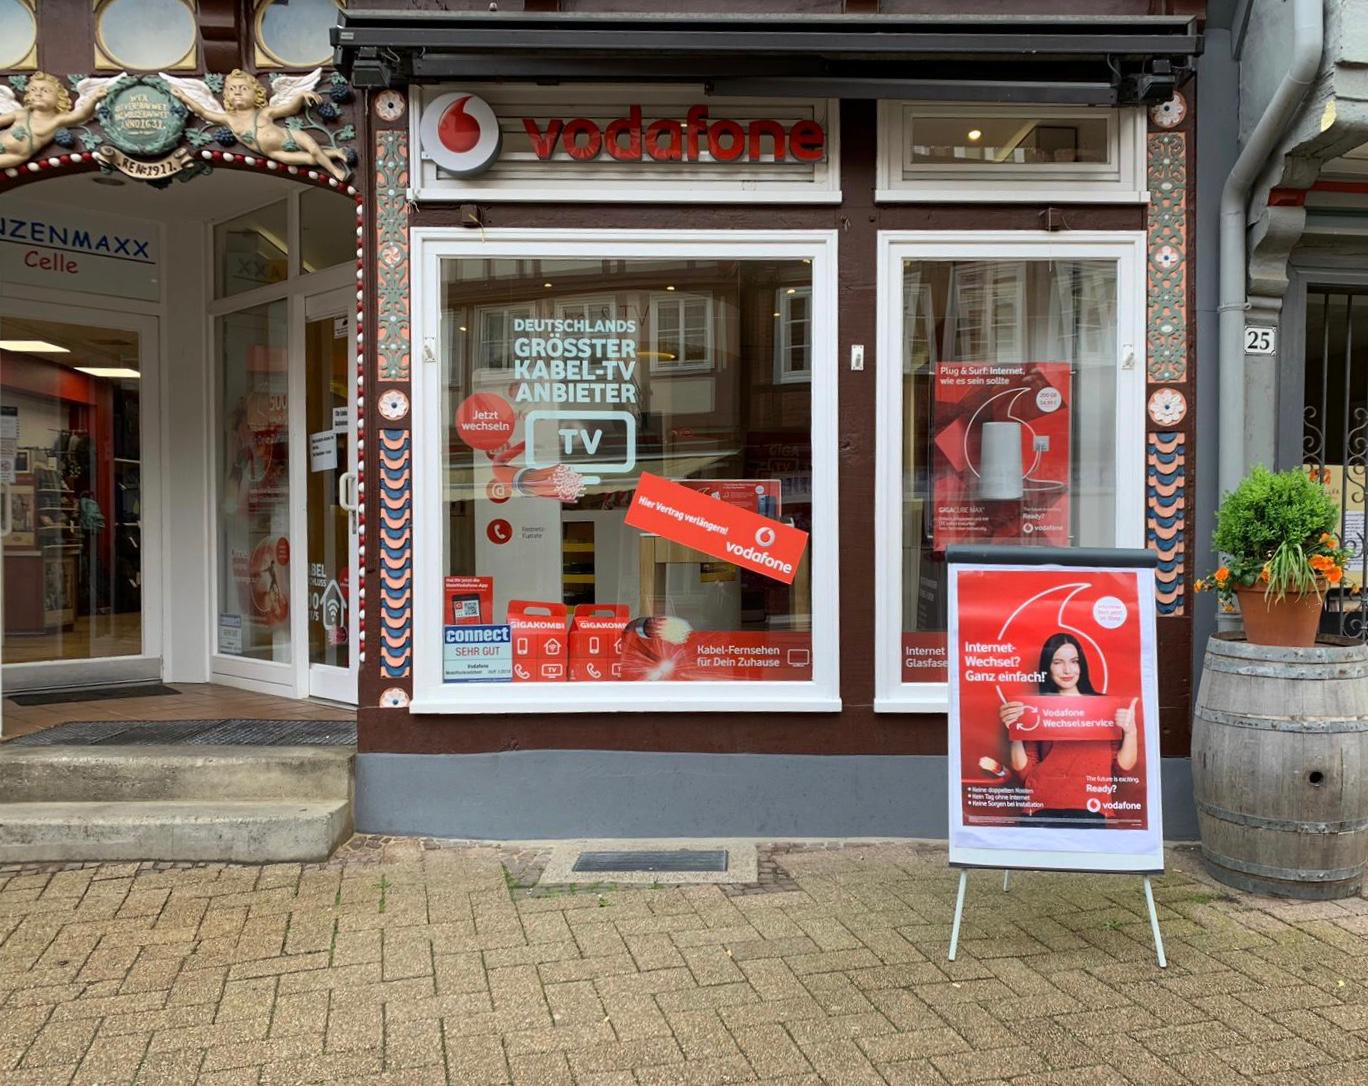 Vodafone Shop (geschlossen), Zöllnerstr. 25 in Celle